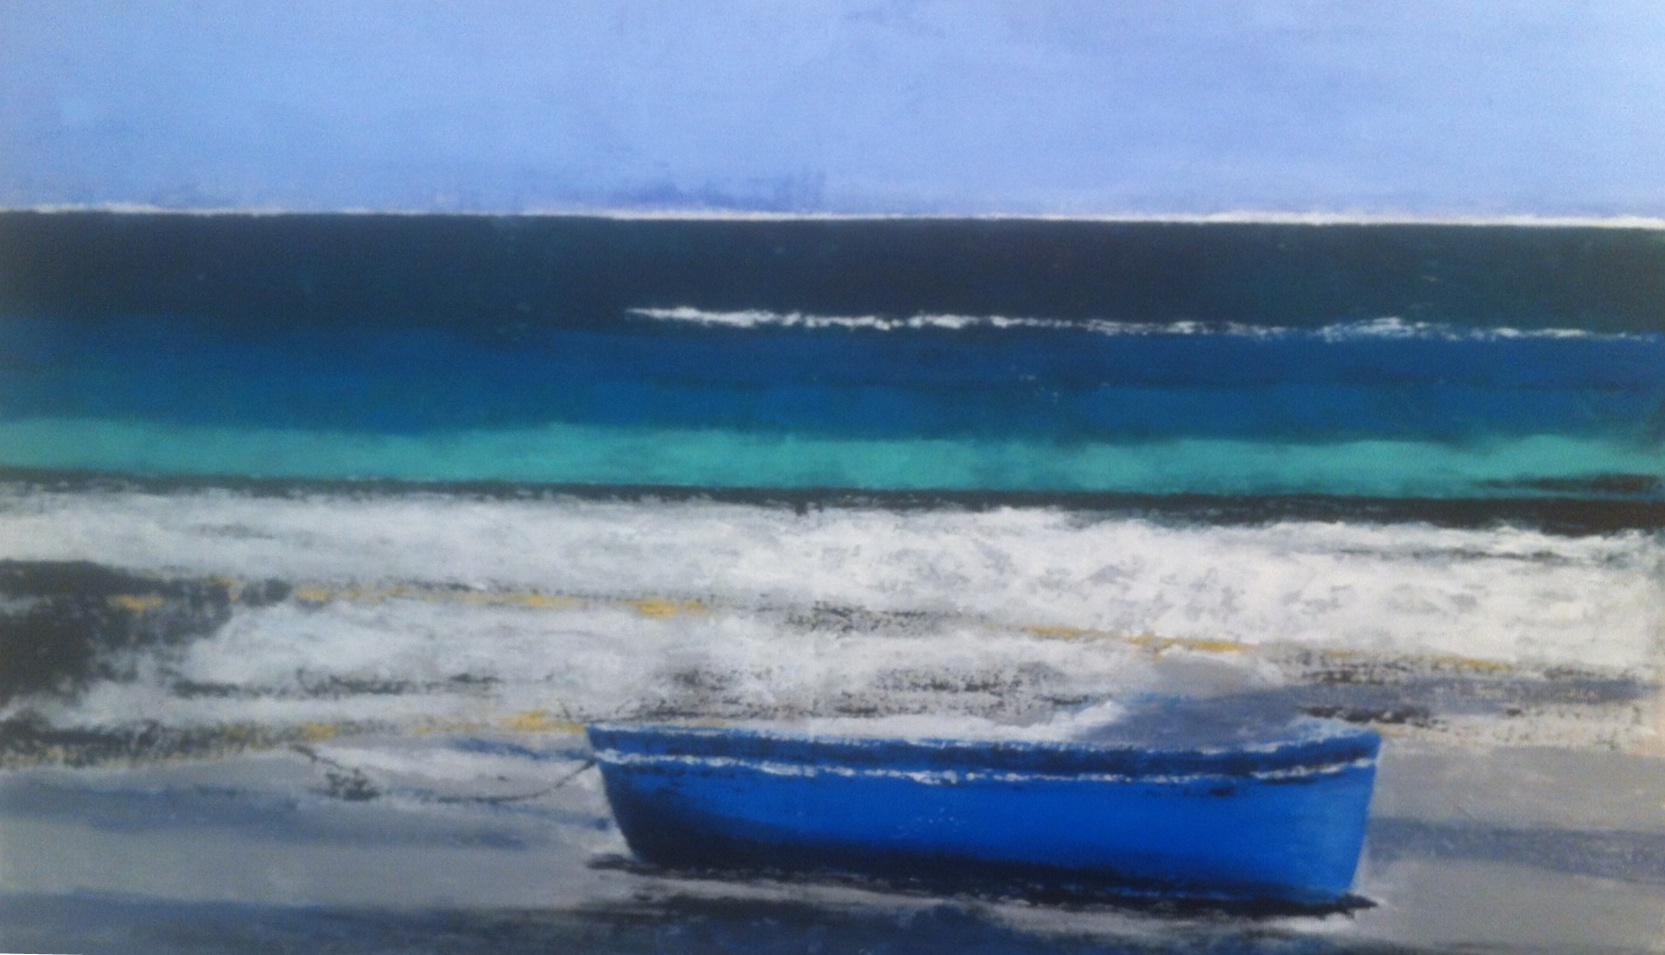 N°1843 - Barque bleue - Acrylique et pigments sur toile - 81 x 130 cm - 9 avril 2015